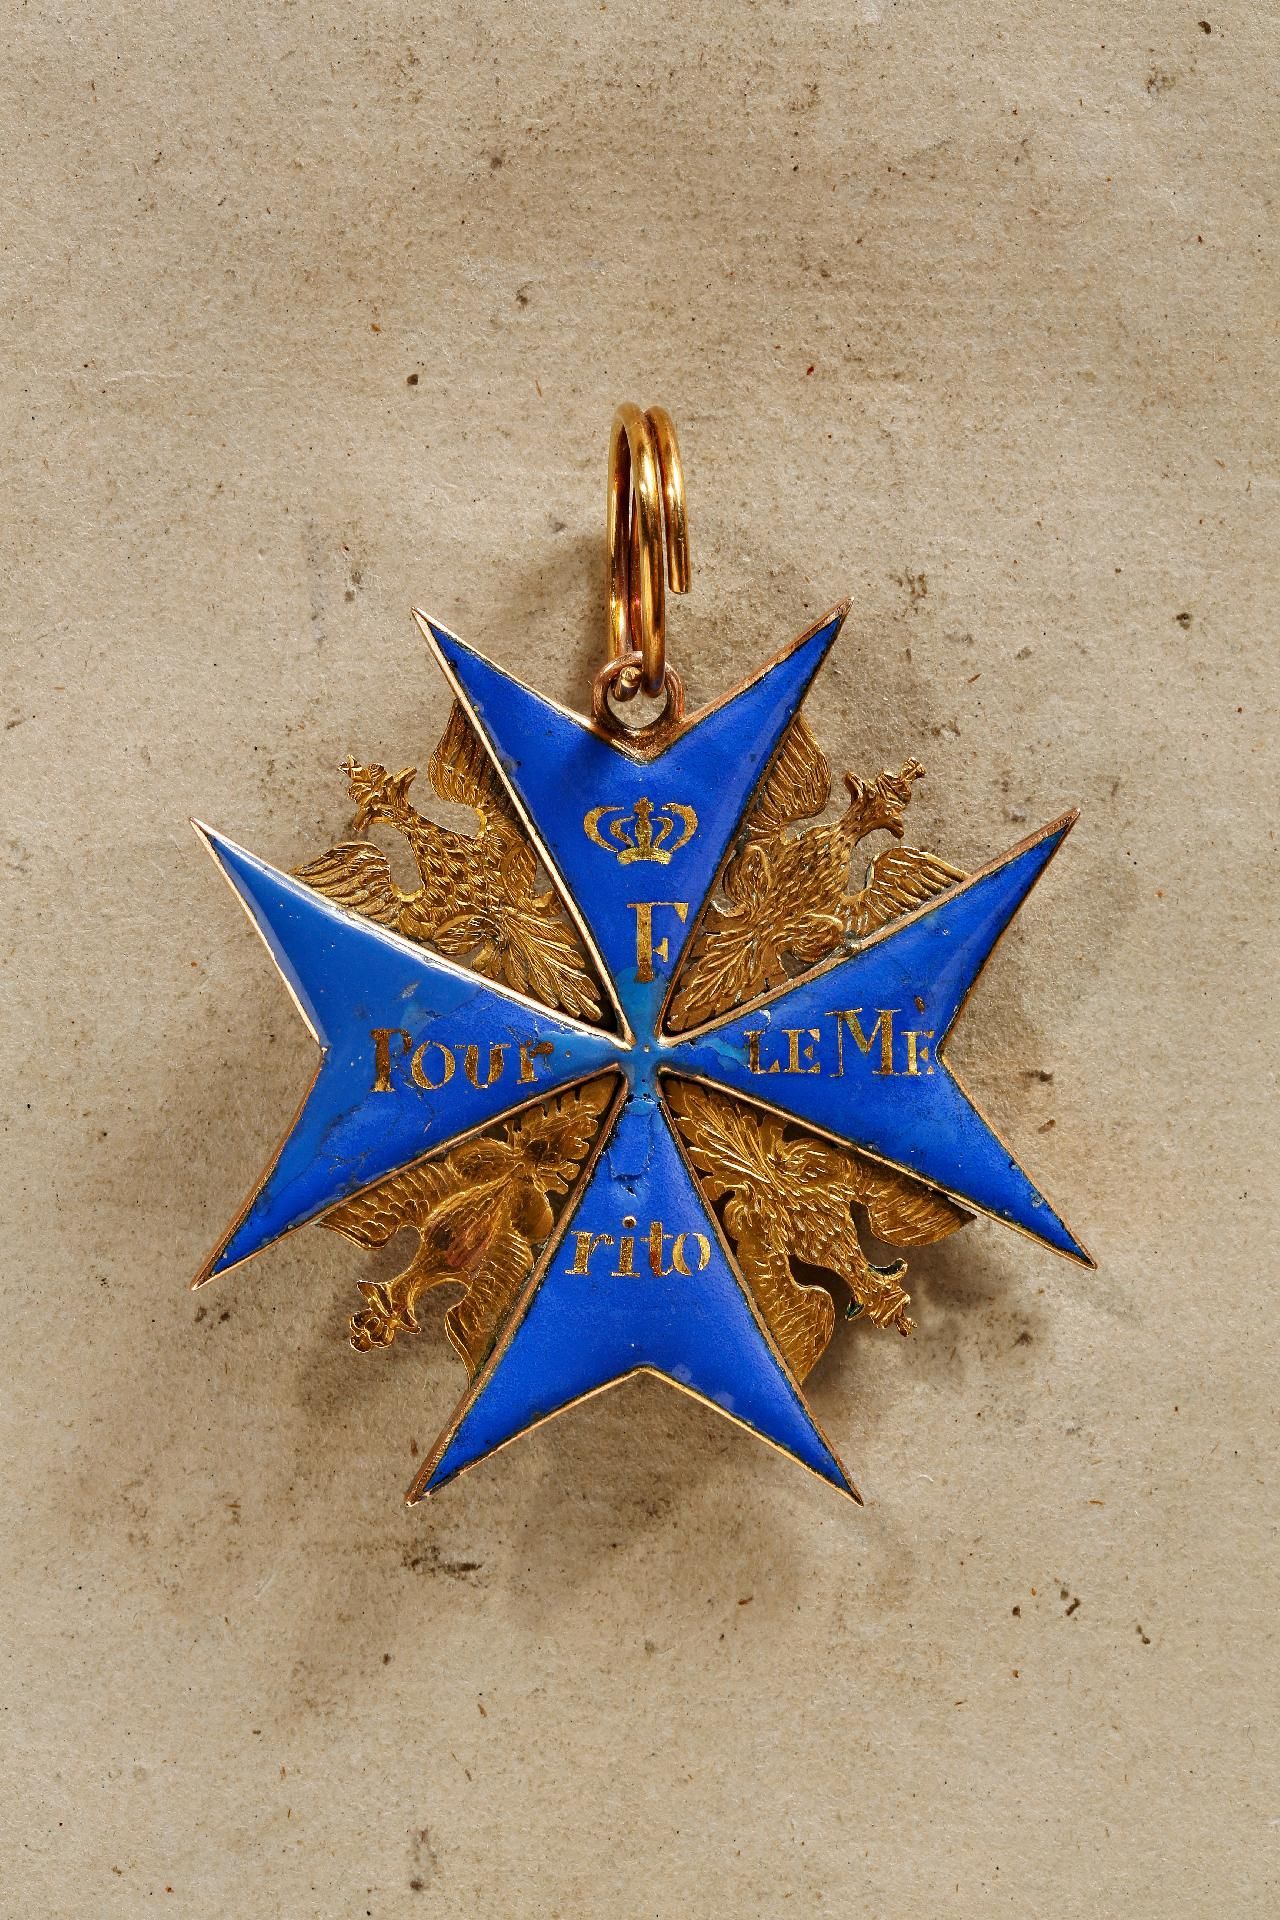 Preußen : Preußen, Orden Pour le Mérite: Bedeutendes Ordenskreuz russischer Fertigung aus der Ze...